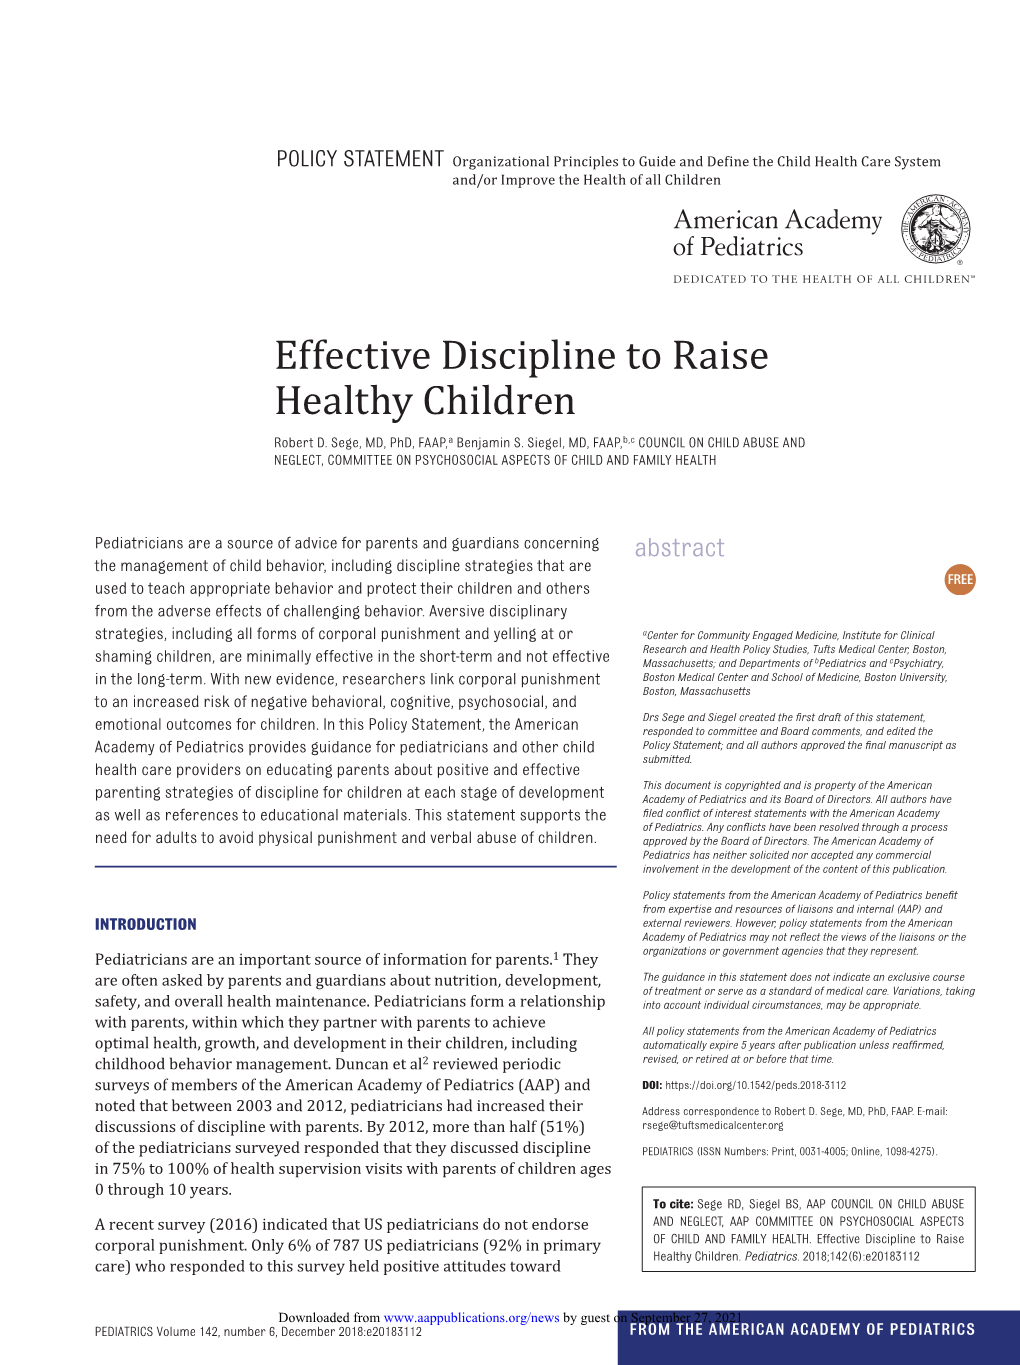 Effective Discipline to Raise Healthy Children Robert D